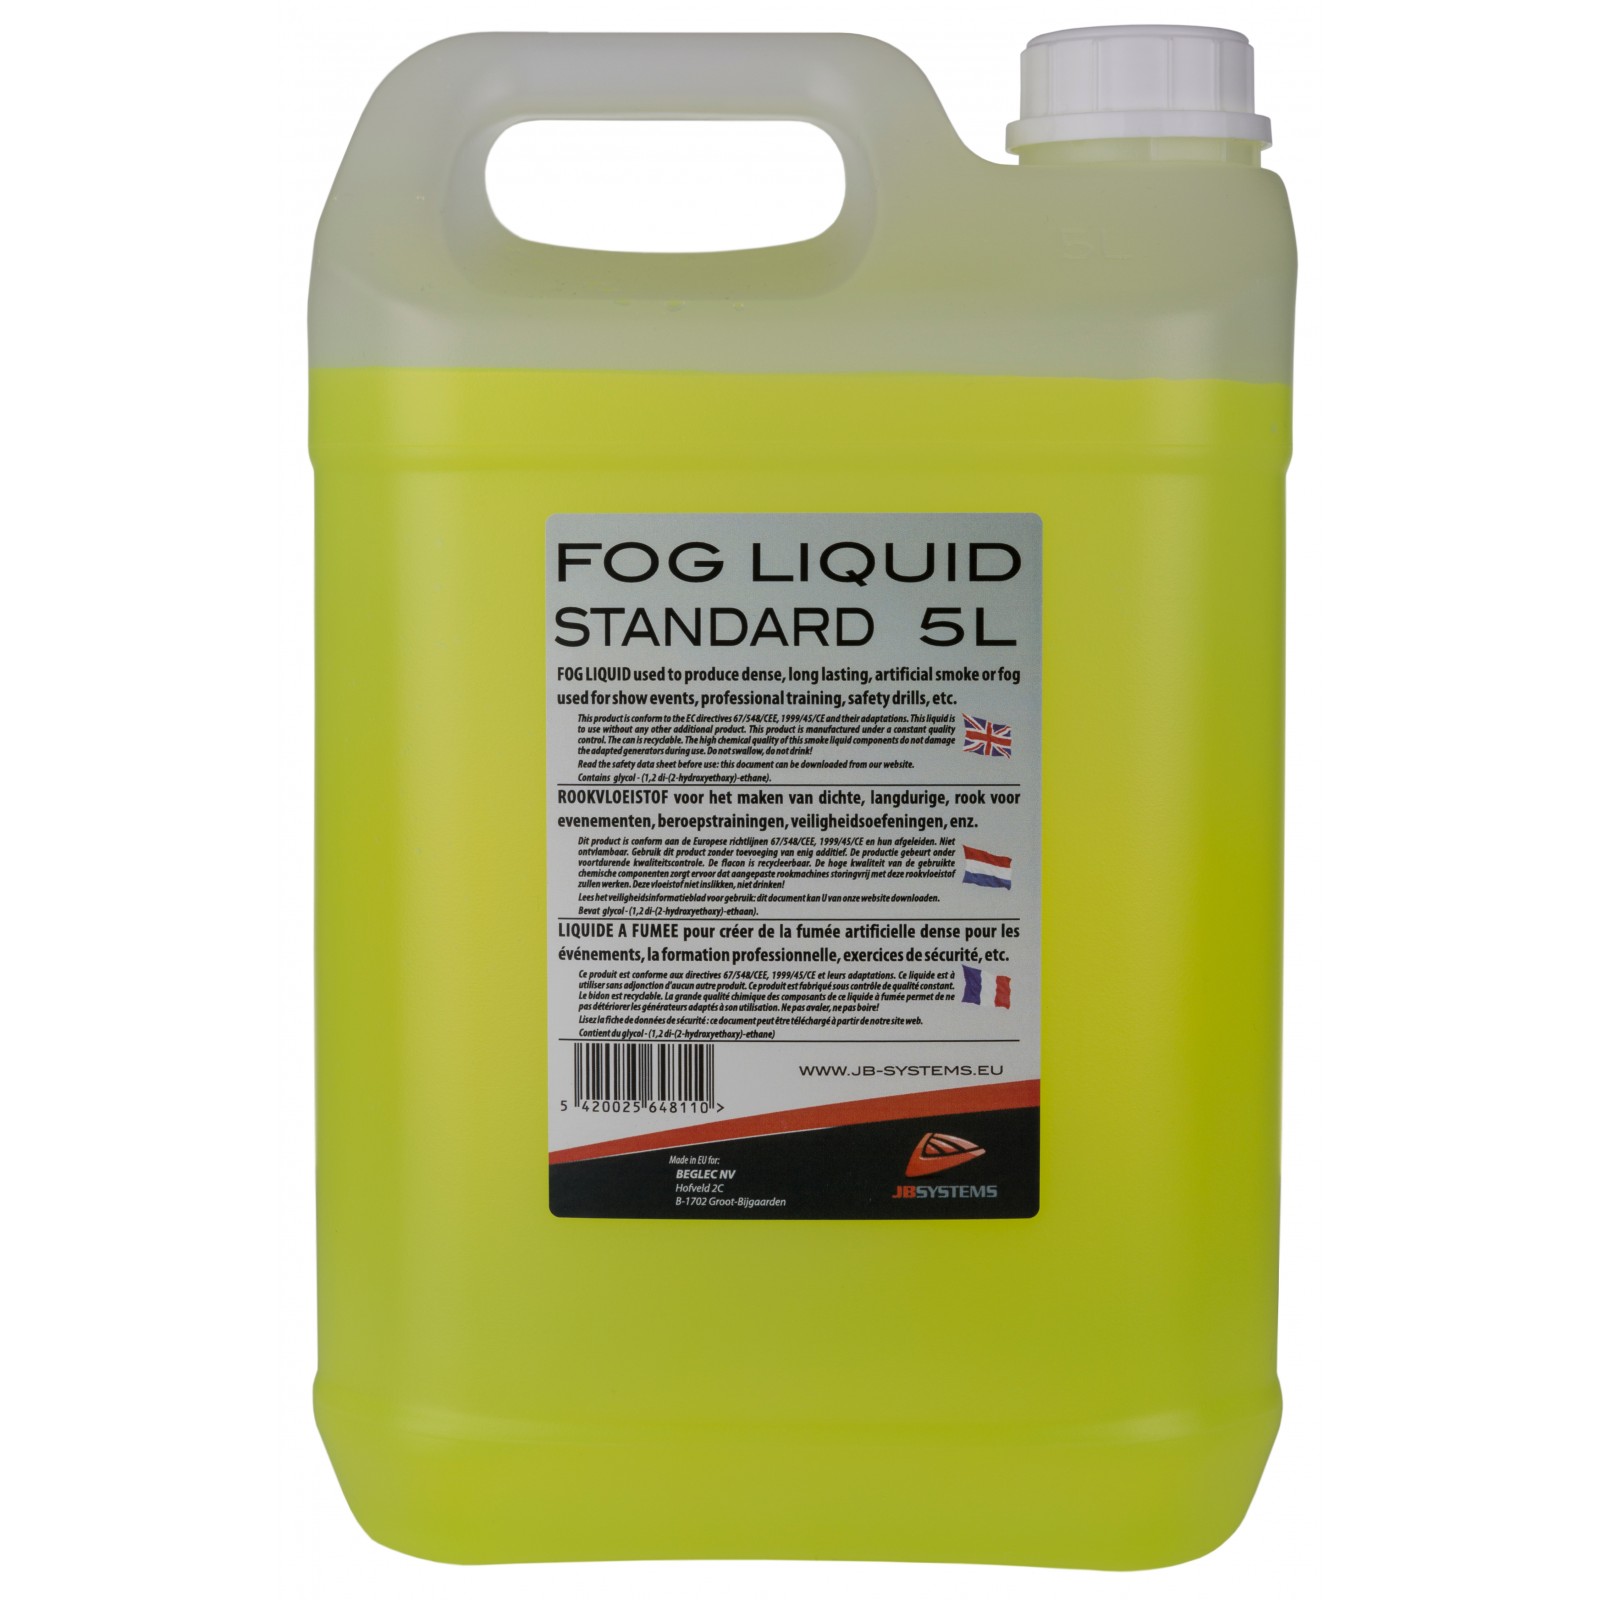 Fog Liquid  STD 5liter , Fogger liquid standard, 5L